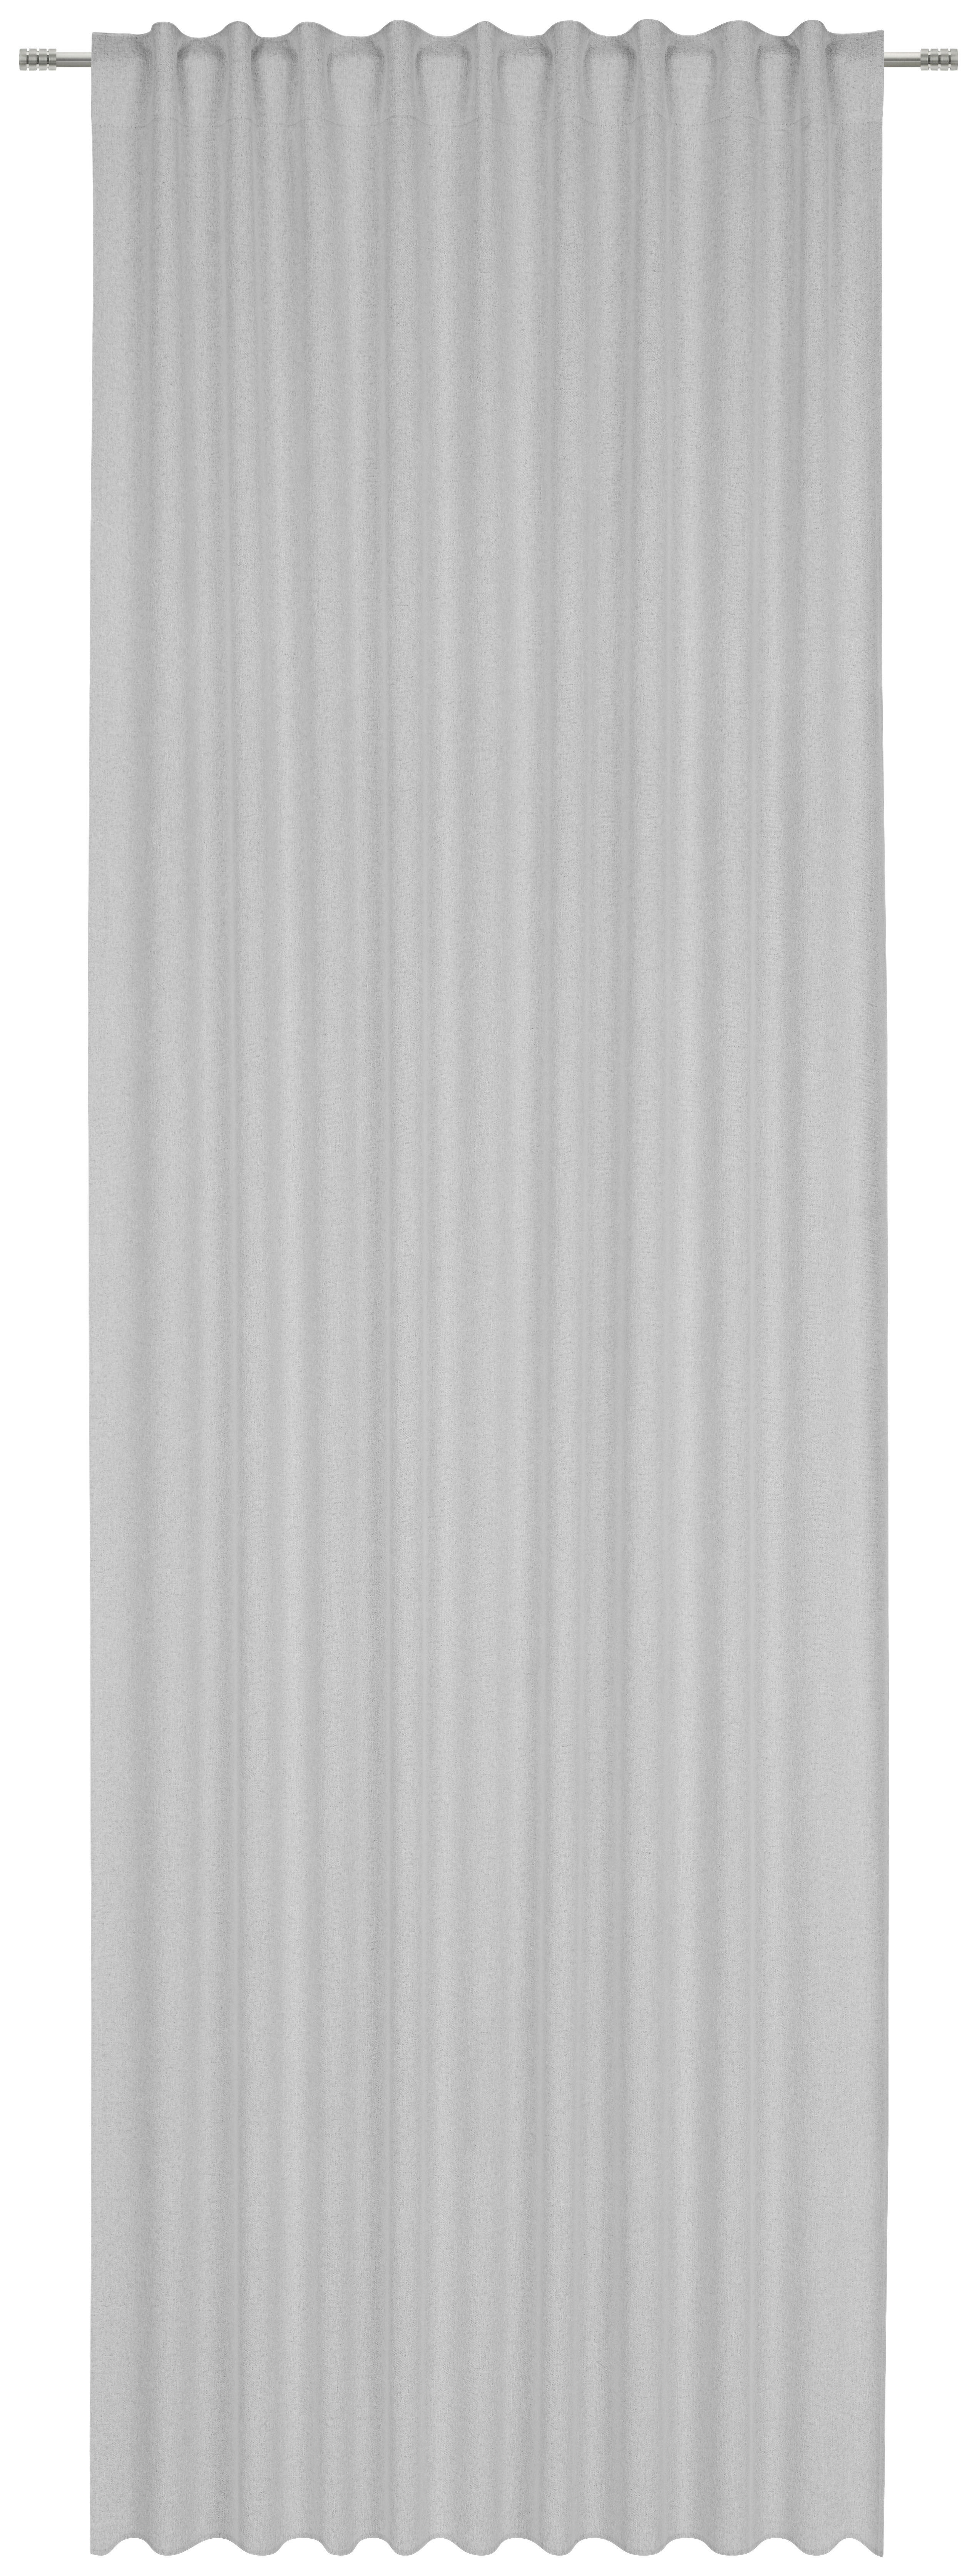 FERTIGVORHANG DUNCAN black-out (lichtundurchlässig) 135/300 cm   - Grau, KONVENTIONELL, Textil (135/300cm) - Esposa